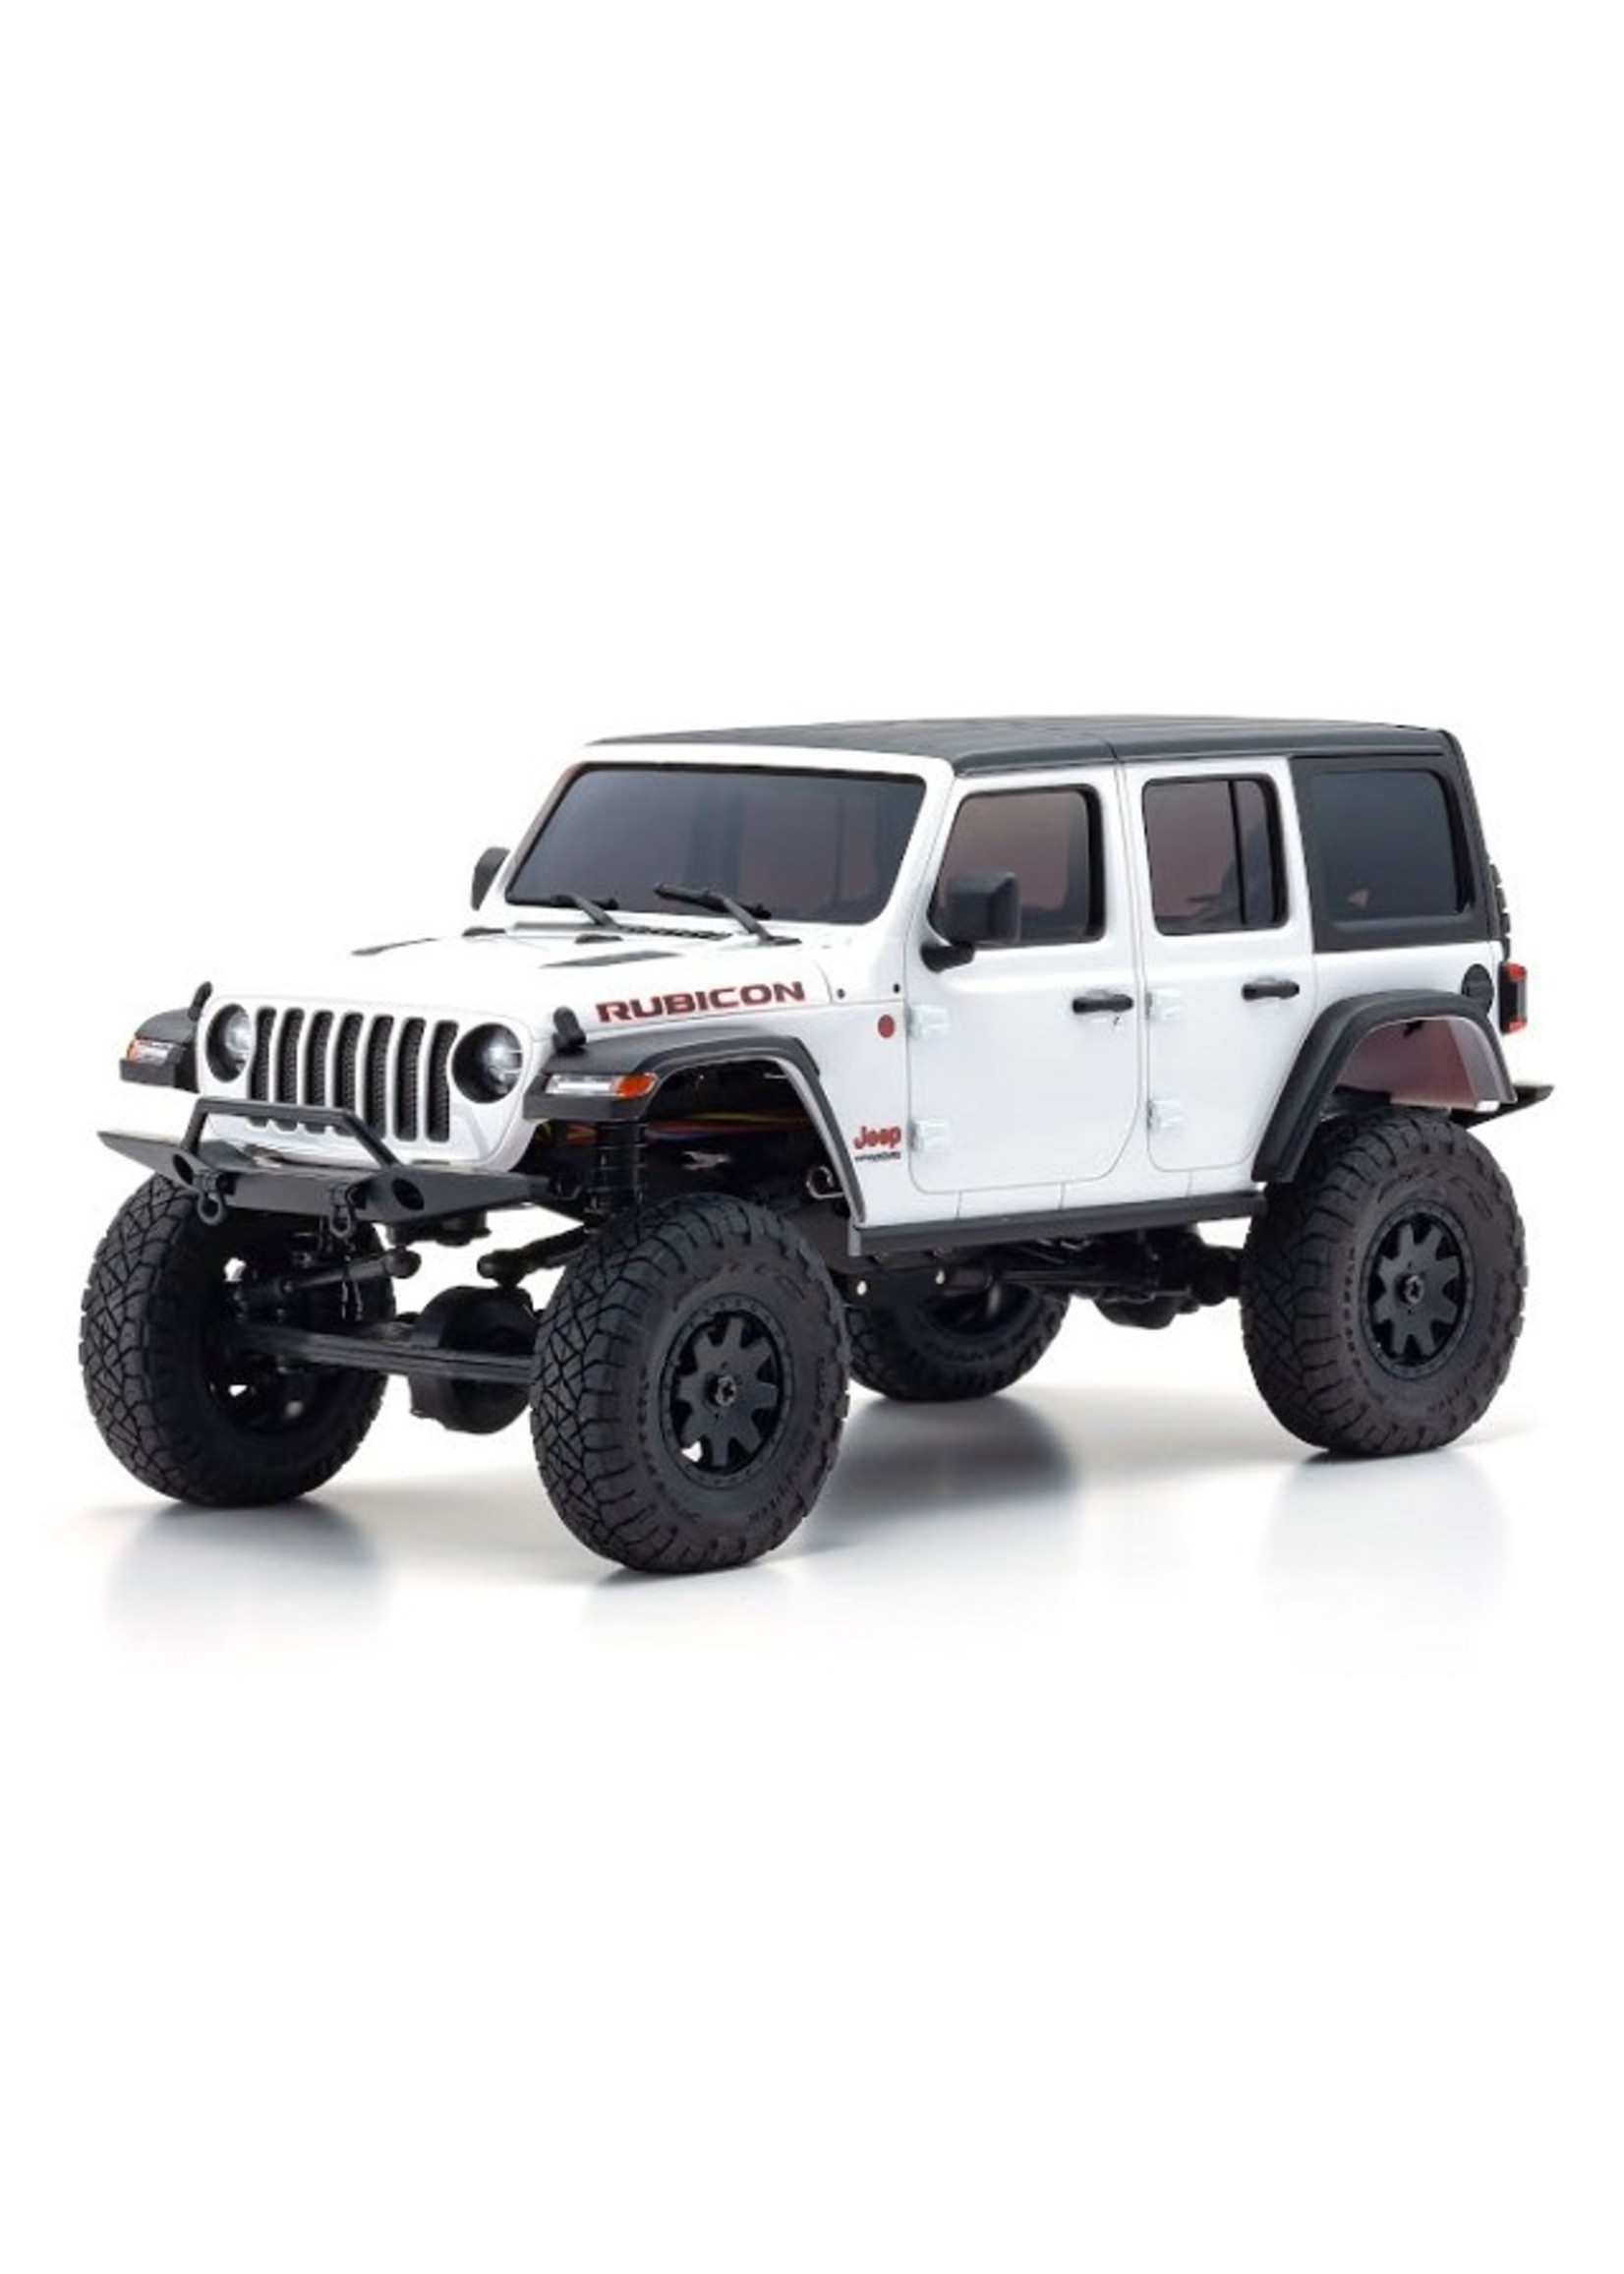 Kyosho 32521W - MINI-Z 4×4  Jeep Wrangler Unlimited Rubicon Readyset - Bright White